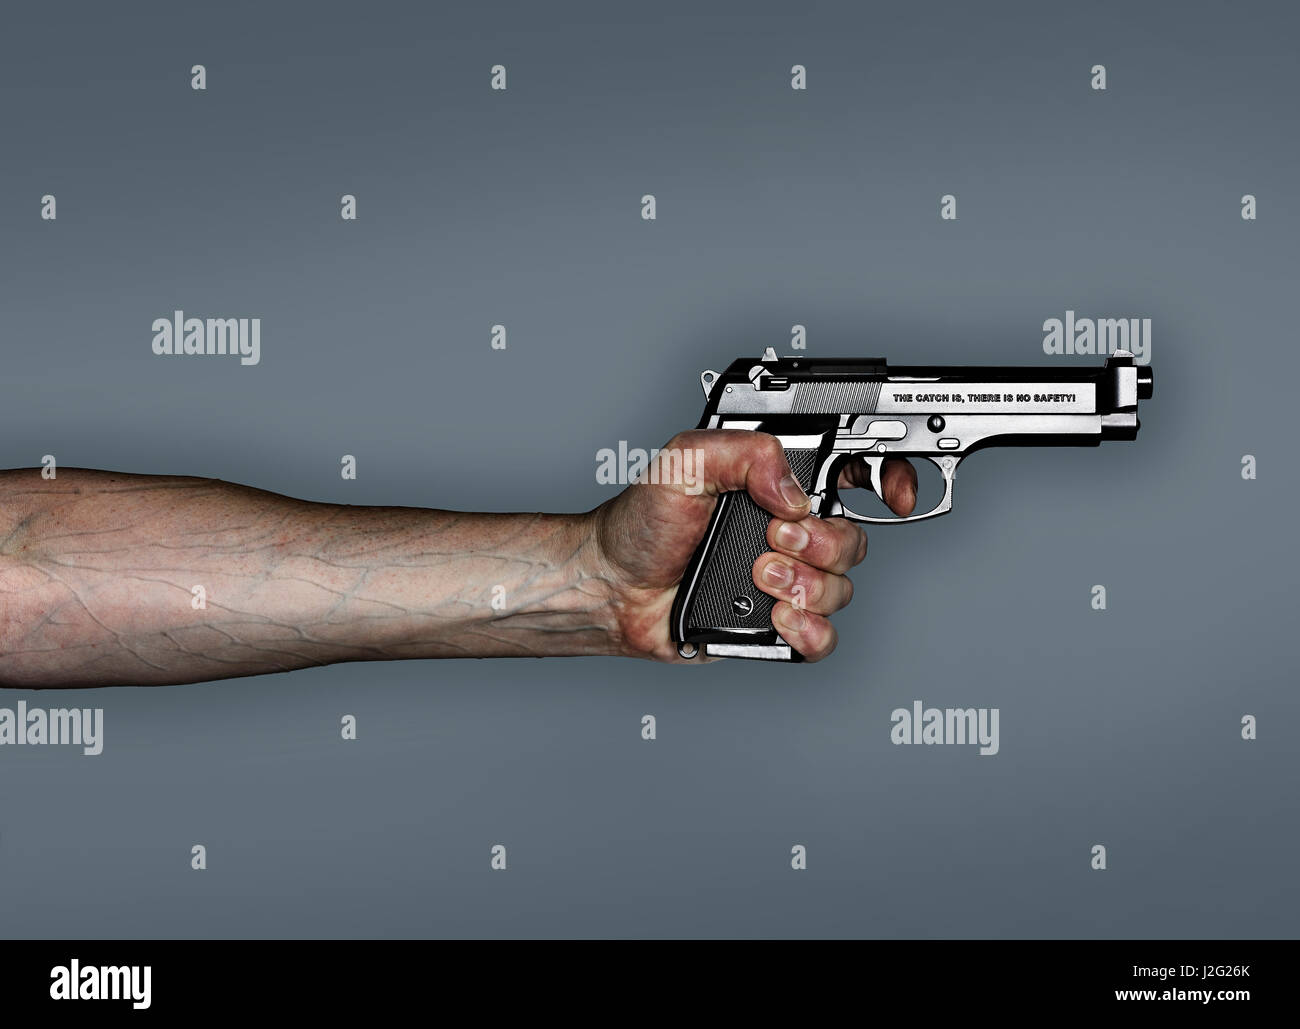 Pistolet main tenant, campagne anti-arme à feu.La prise est, il n'y a pas de sécurité, écrite sur le côté du pistolet Banque D'Images